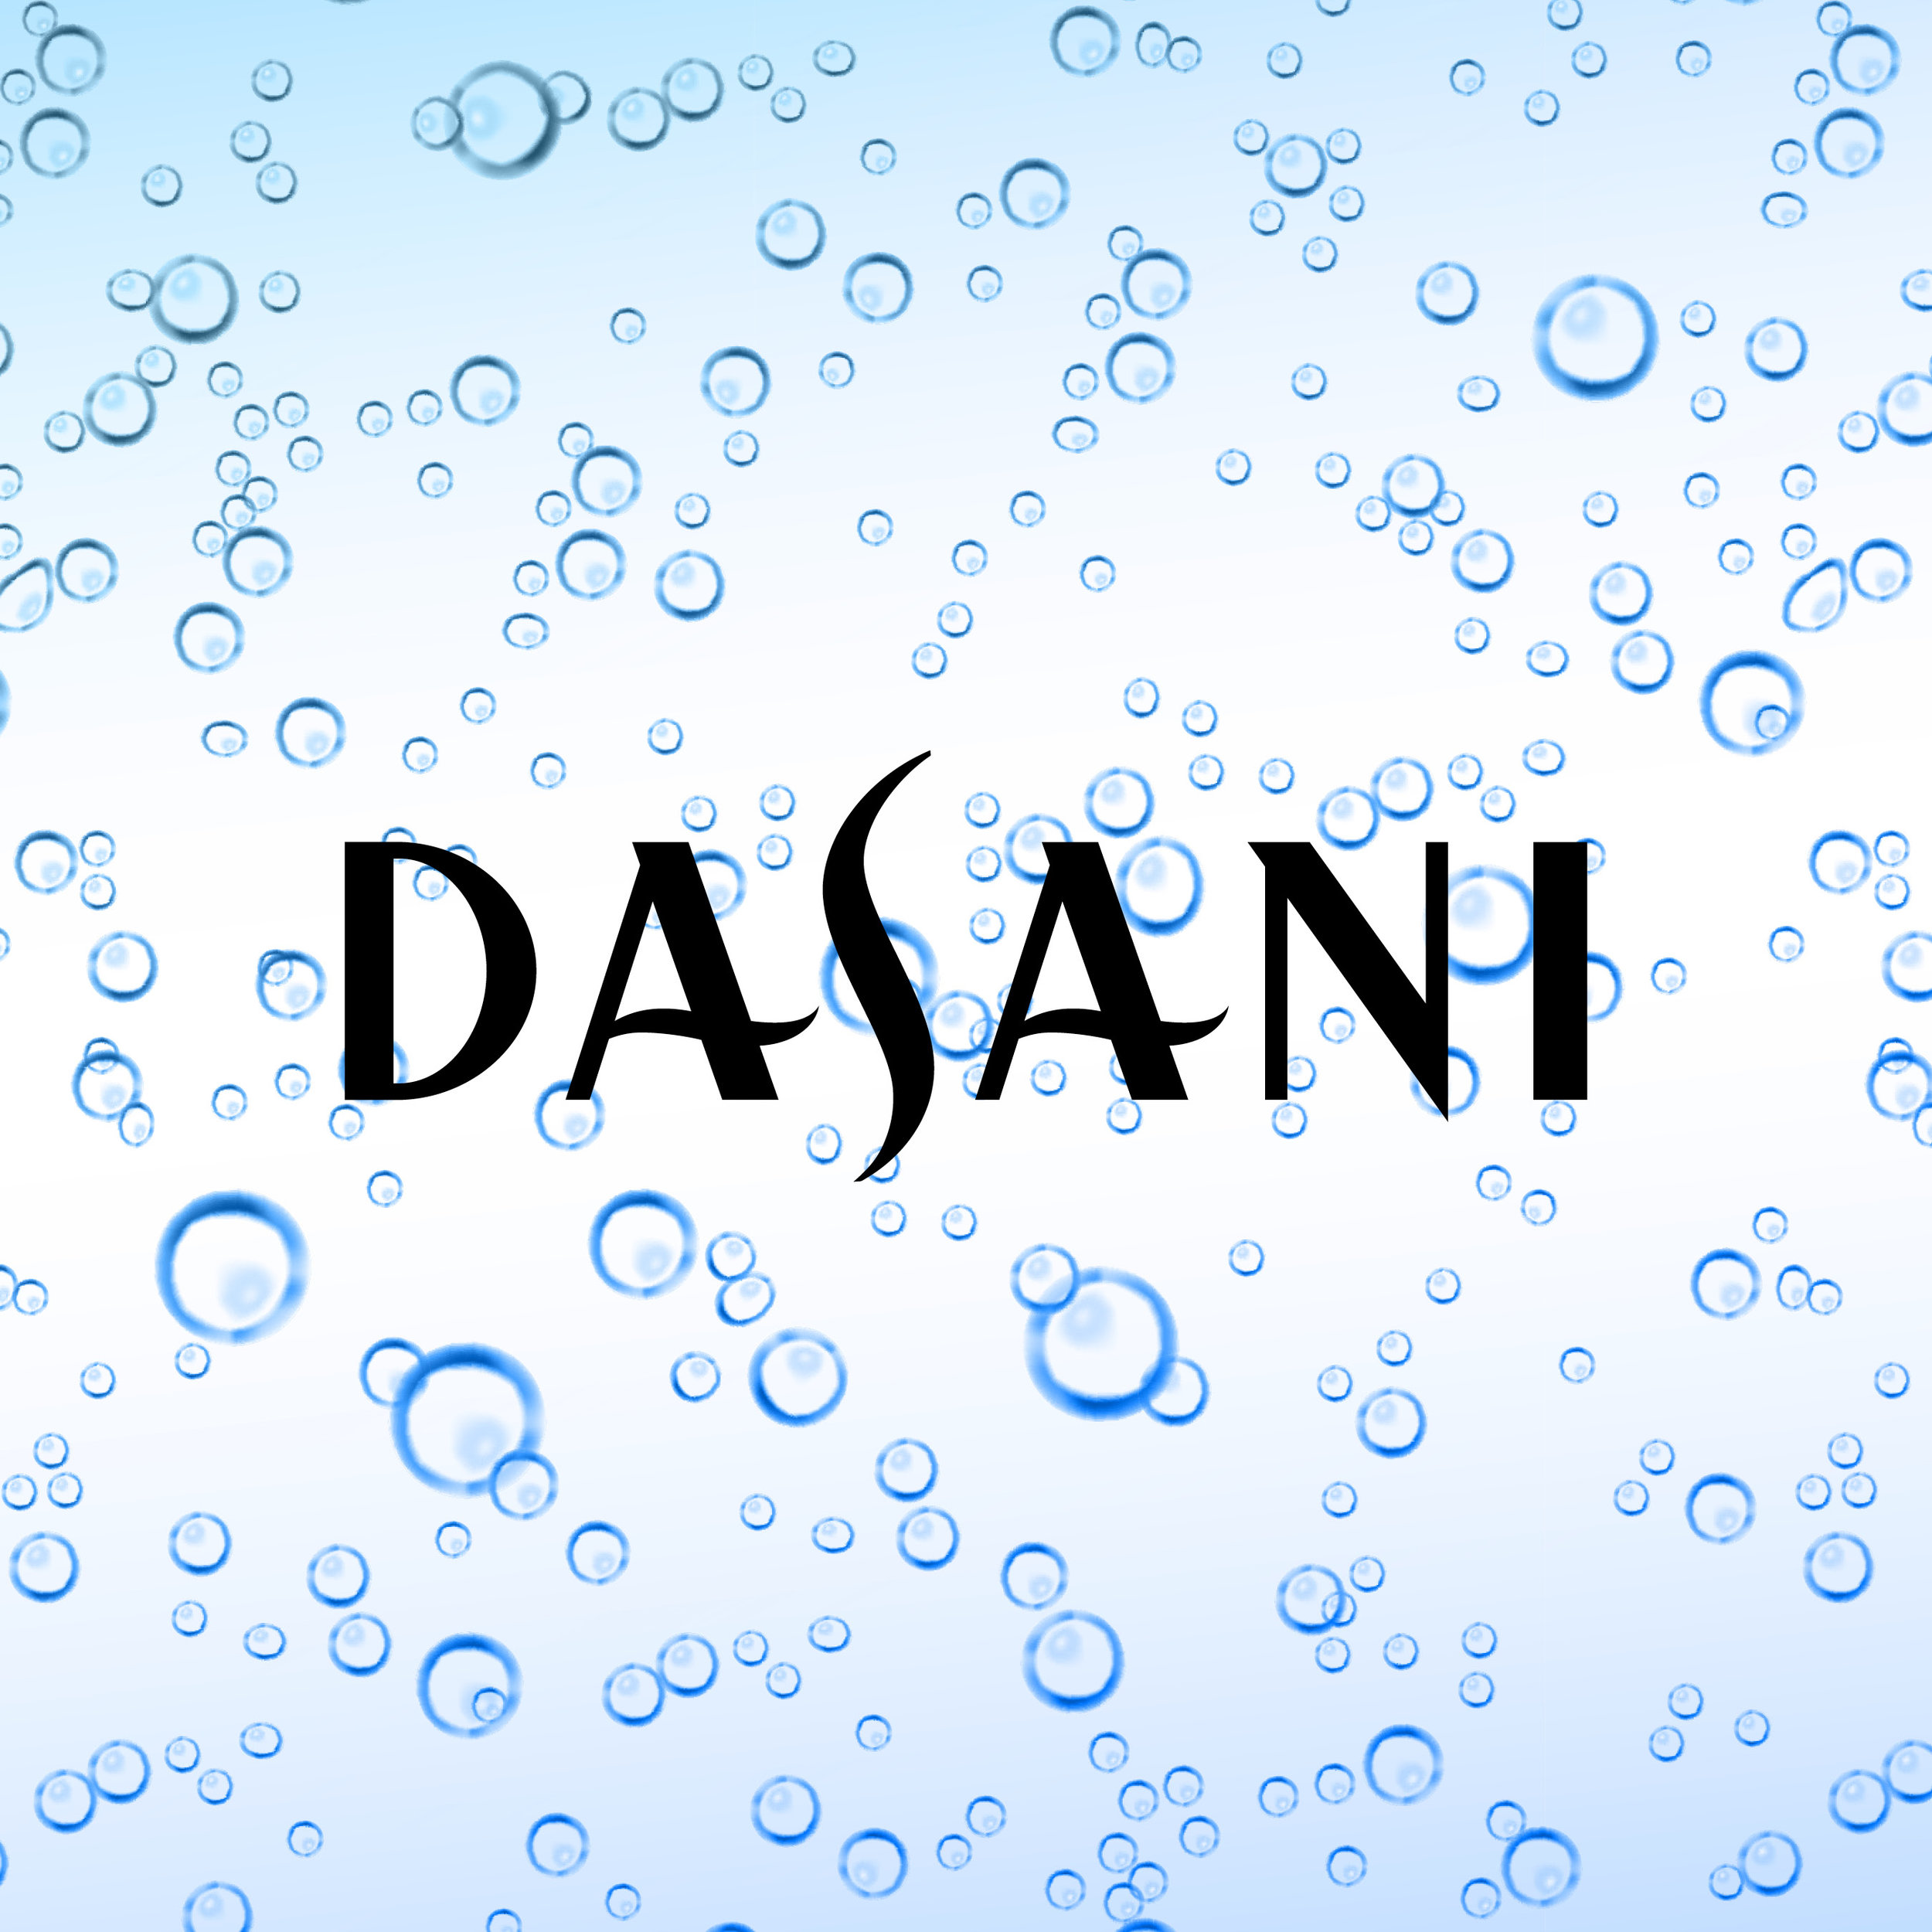 Dasani (Copy)